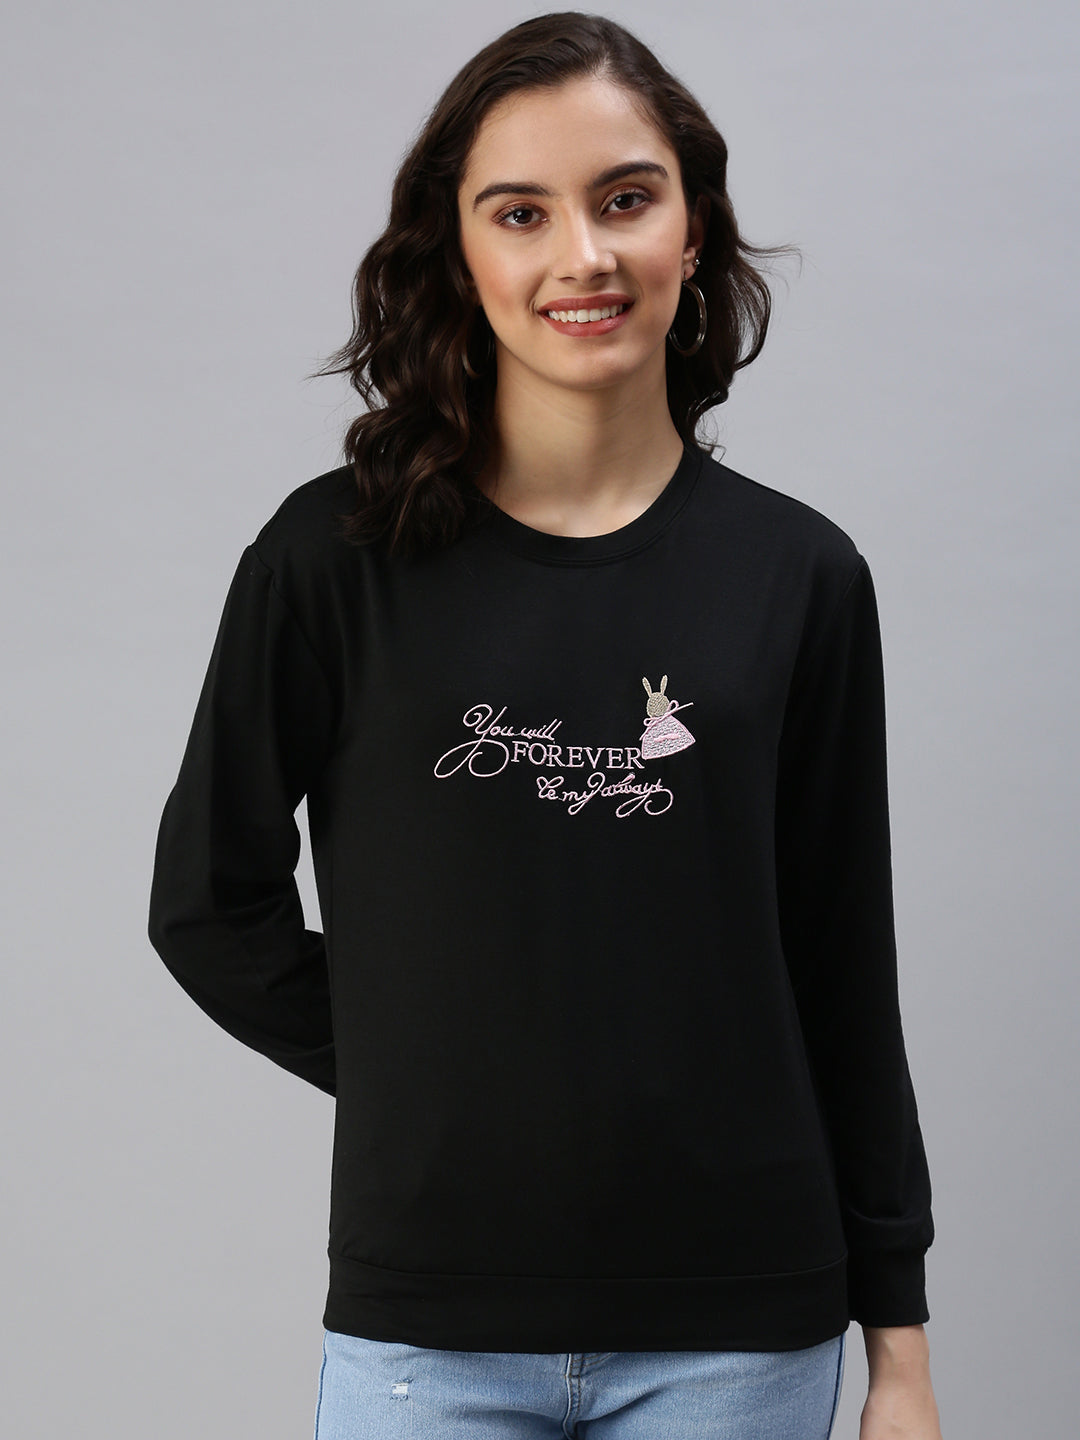 Women's Black Solid SweatShirt